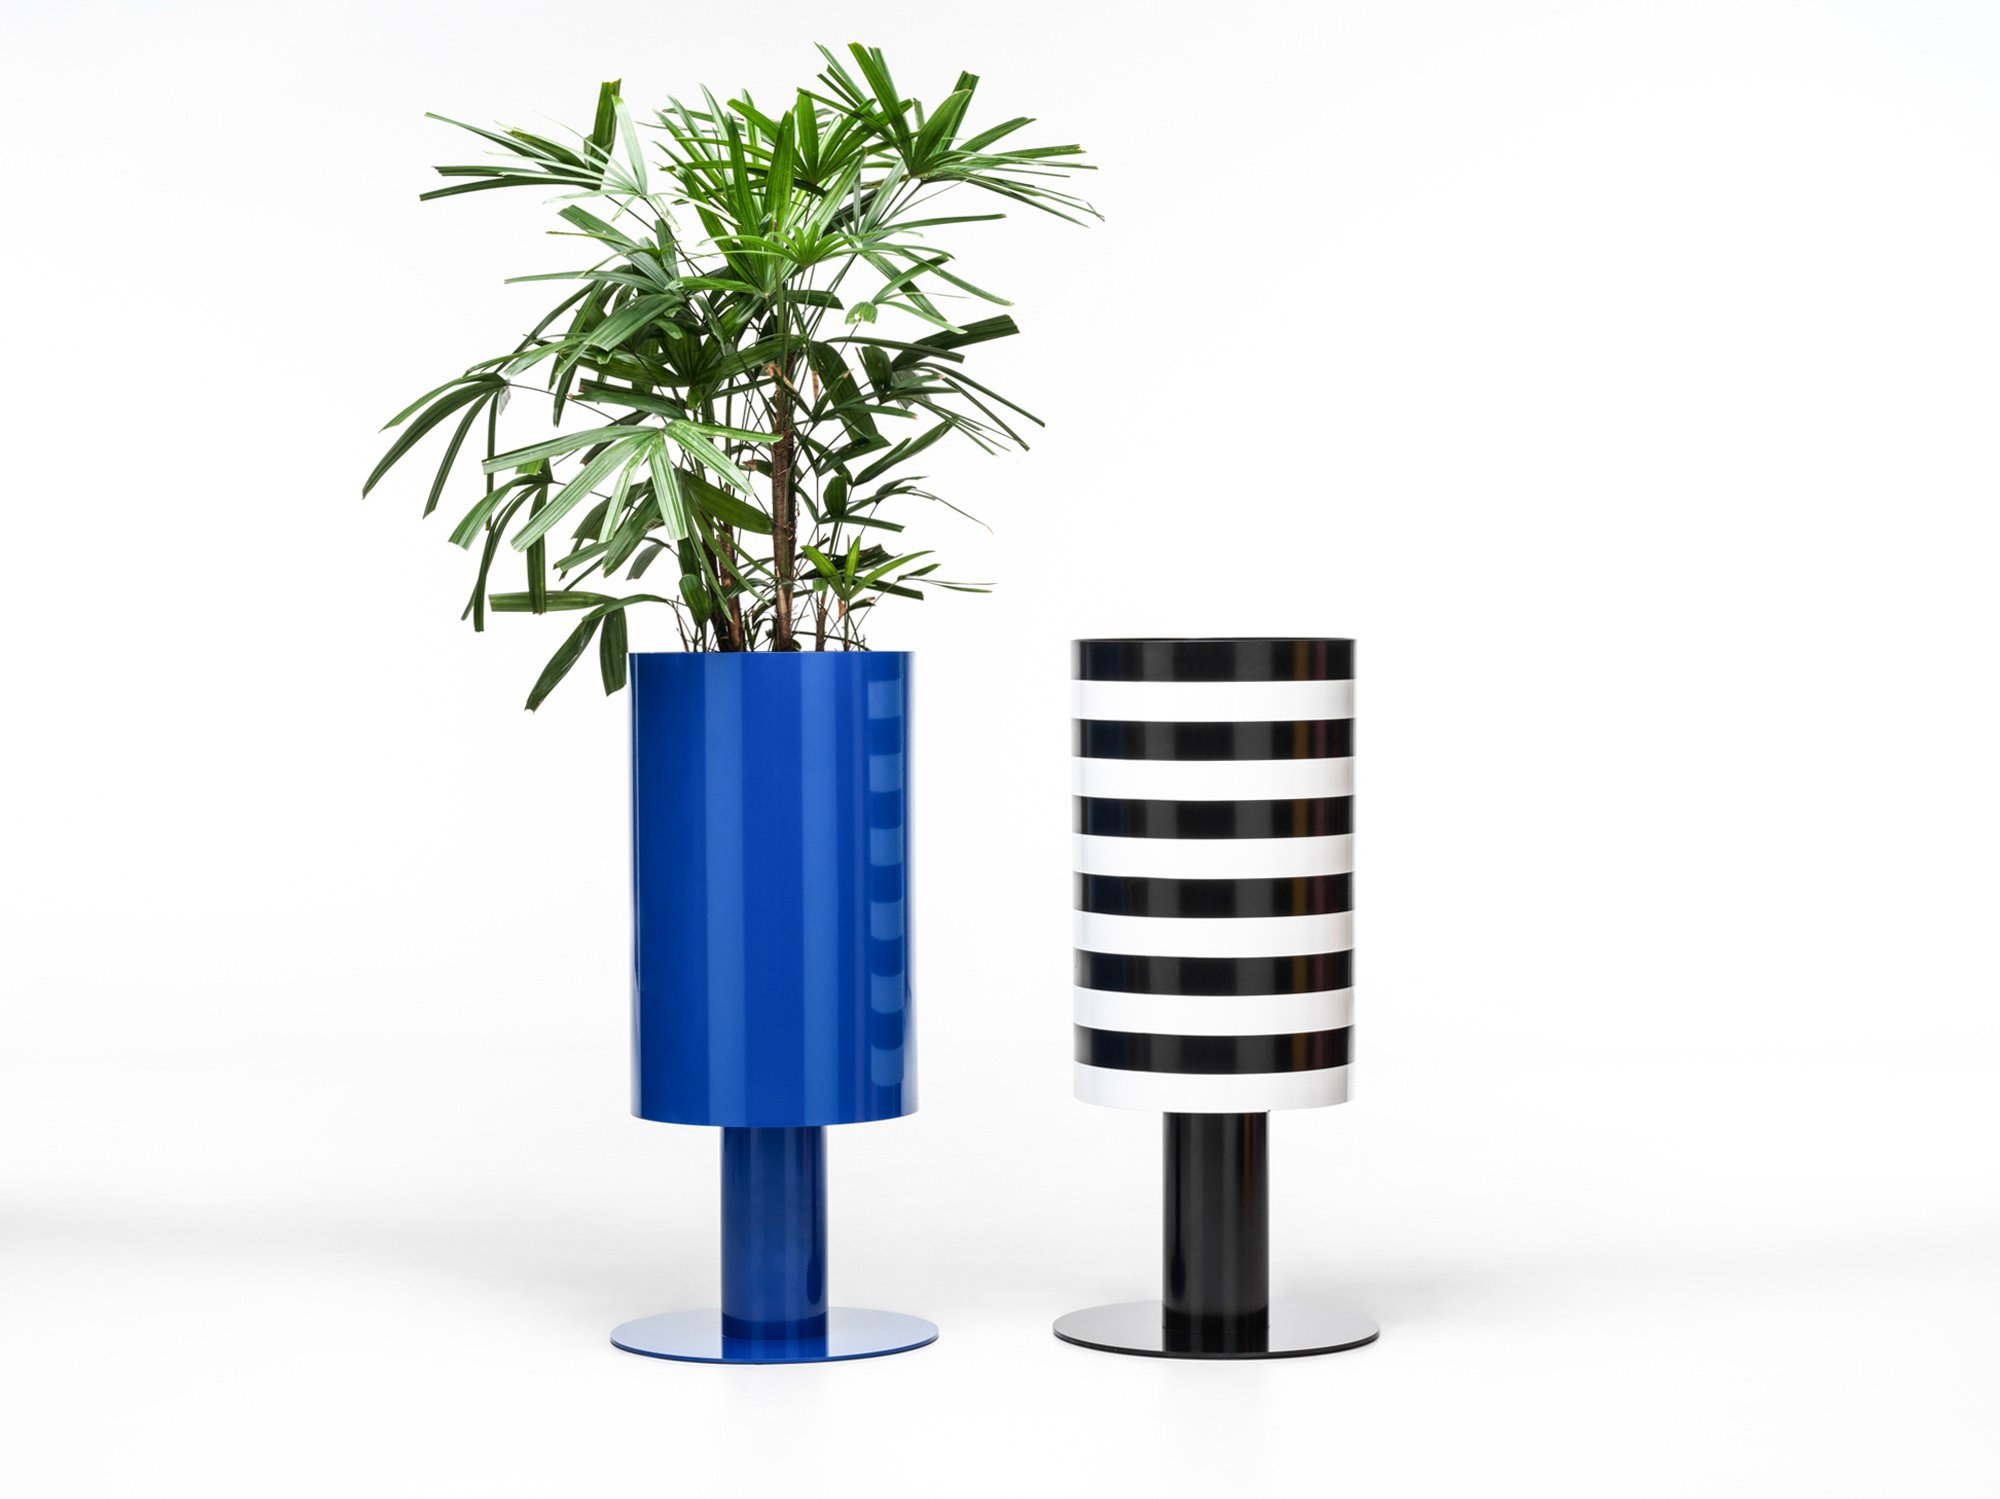 b2-planter-studiociao-ciao-stripes-blueplanter.jpg